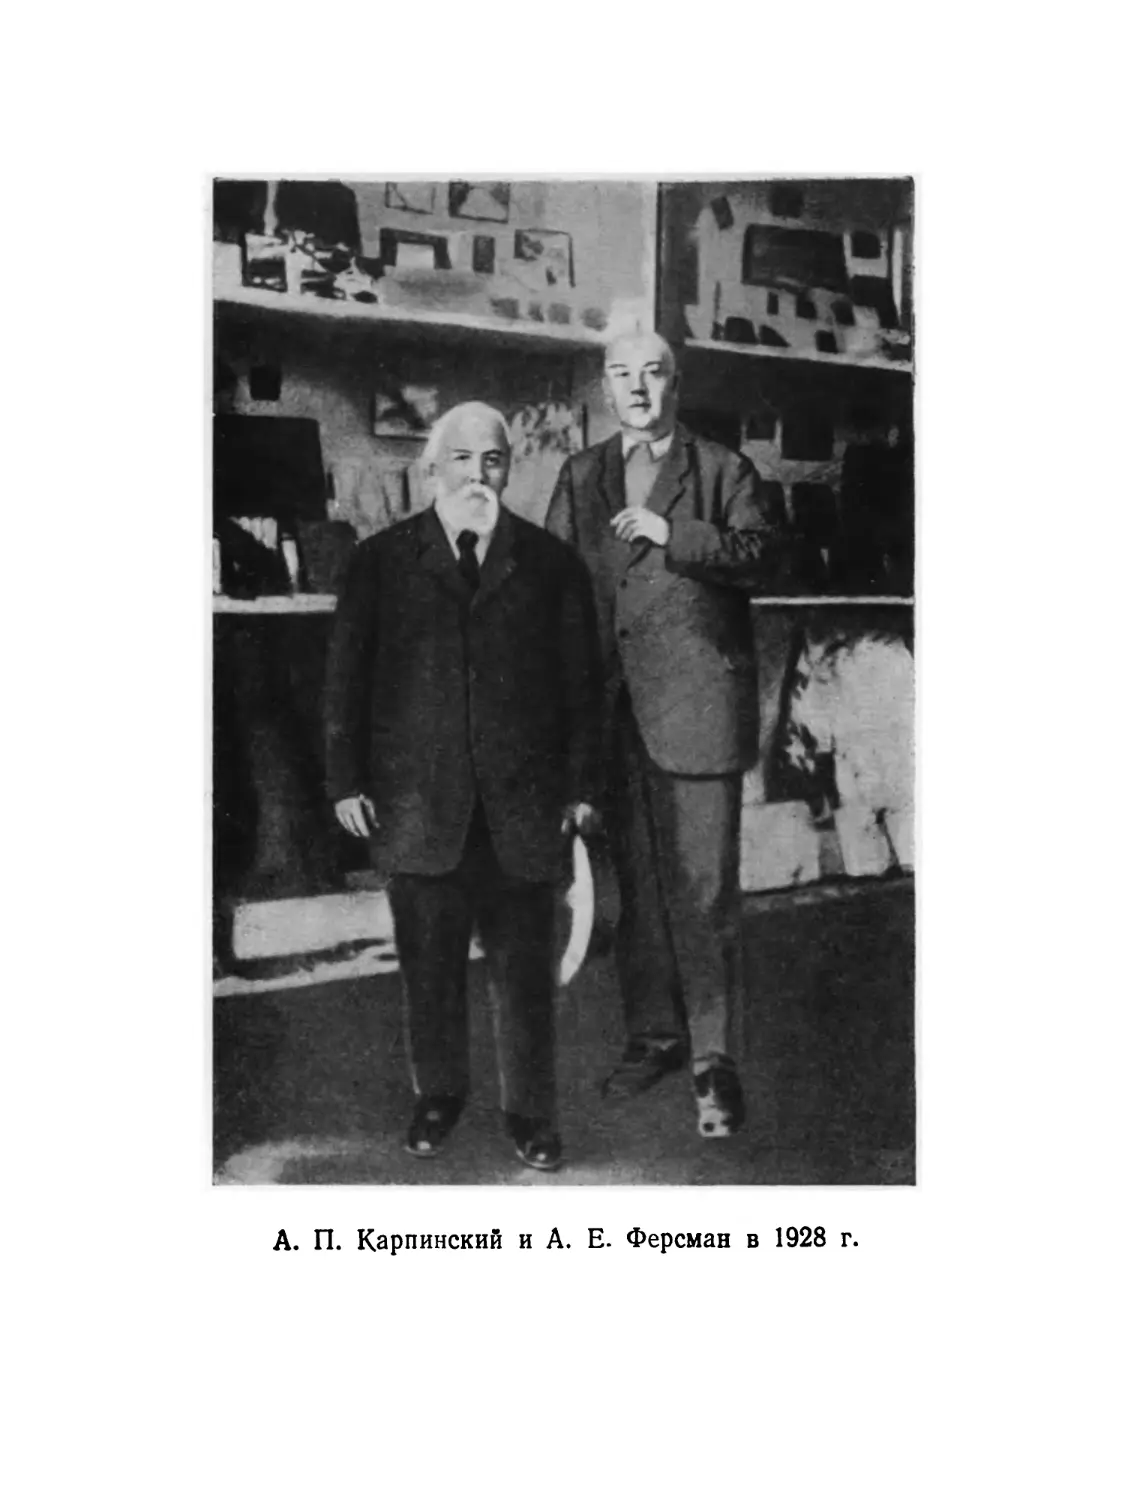 Вклейка. А. П. Карпинский и А. Е. Ферсман в 1928 г.